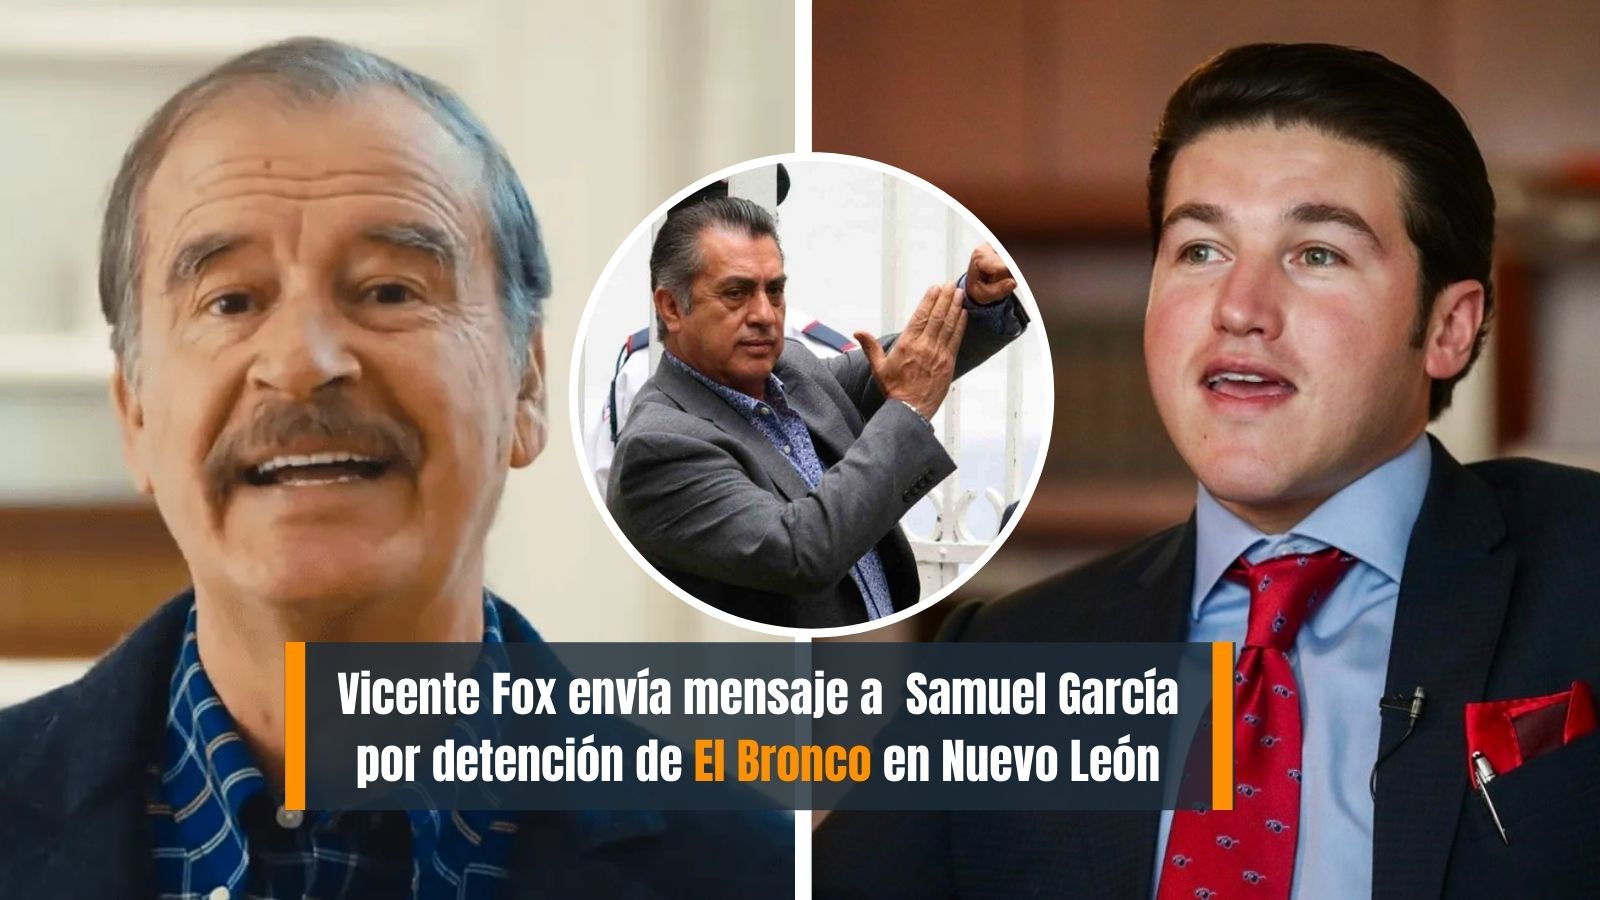 Vicente Fox envía mensaje a Samuel García por detención de El Bronco